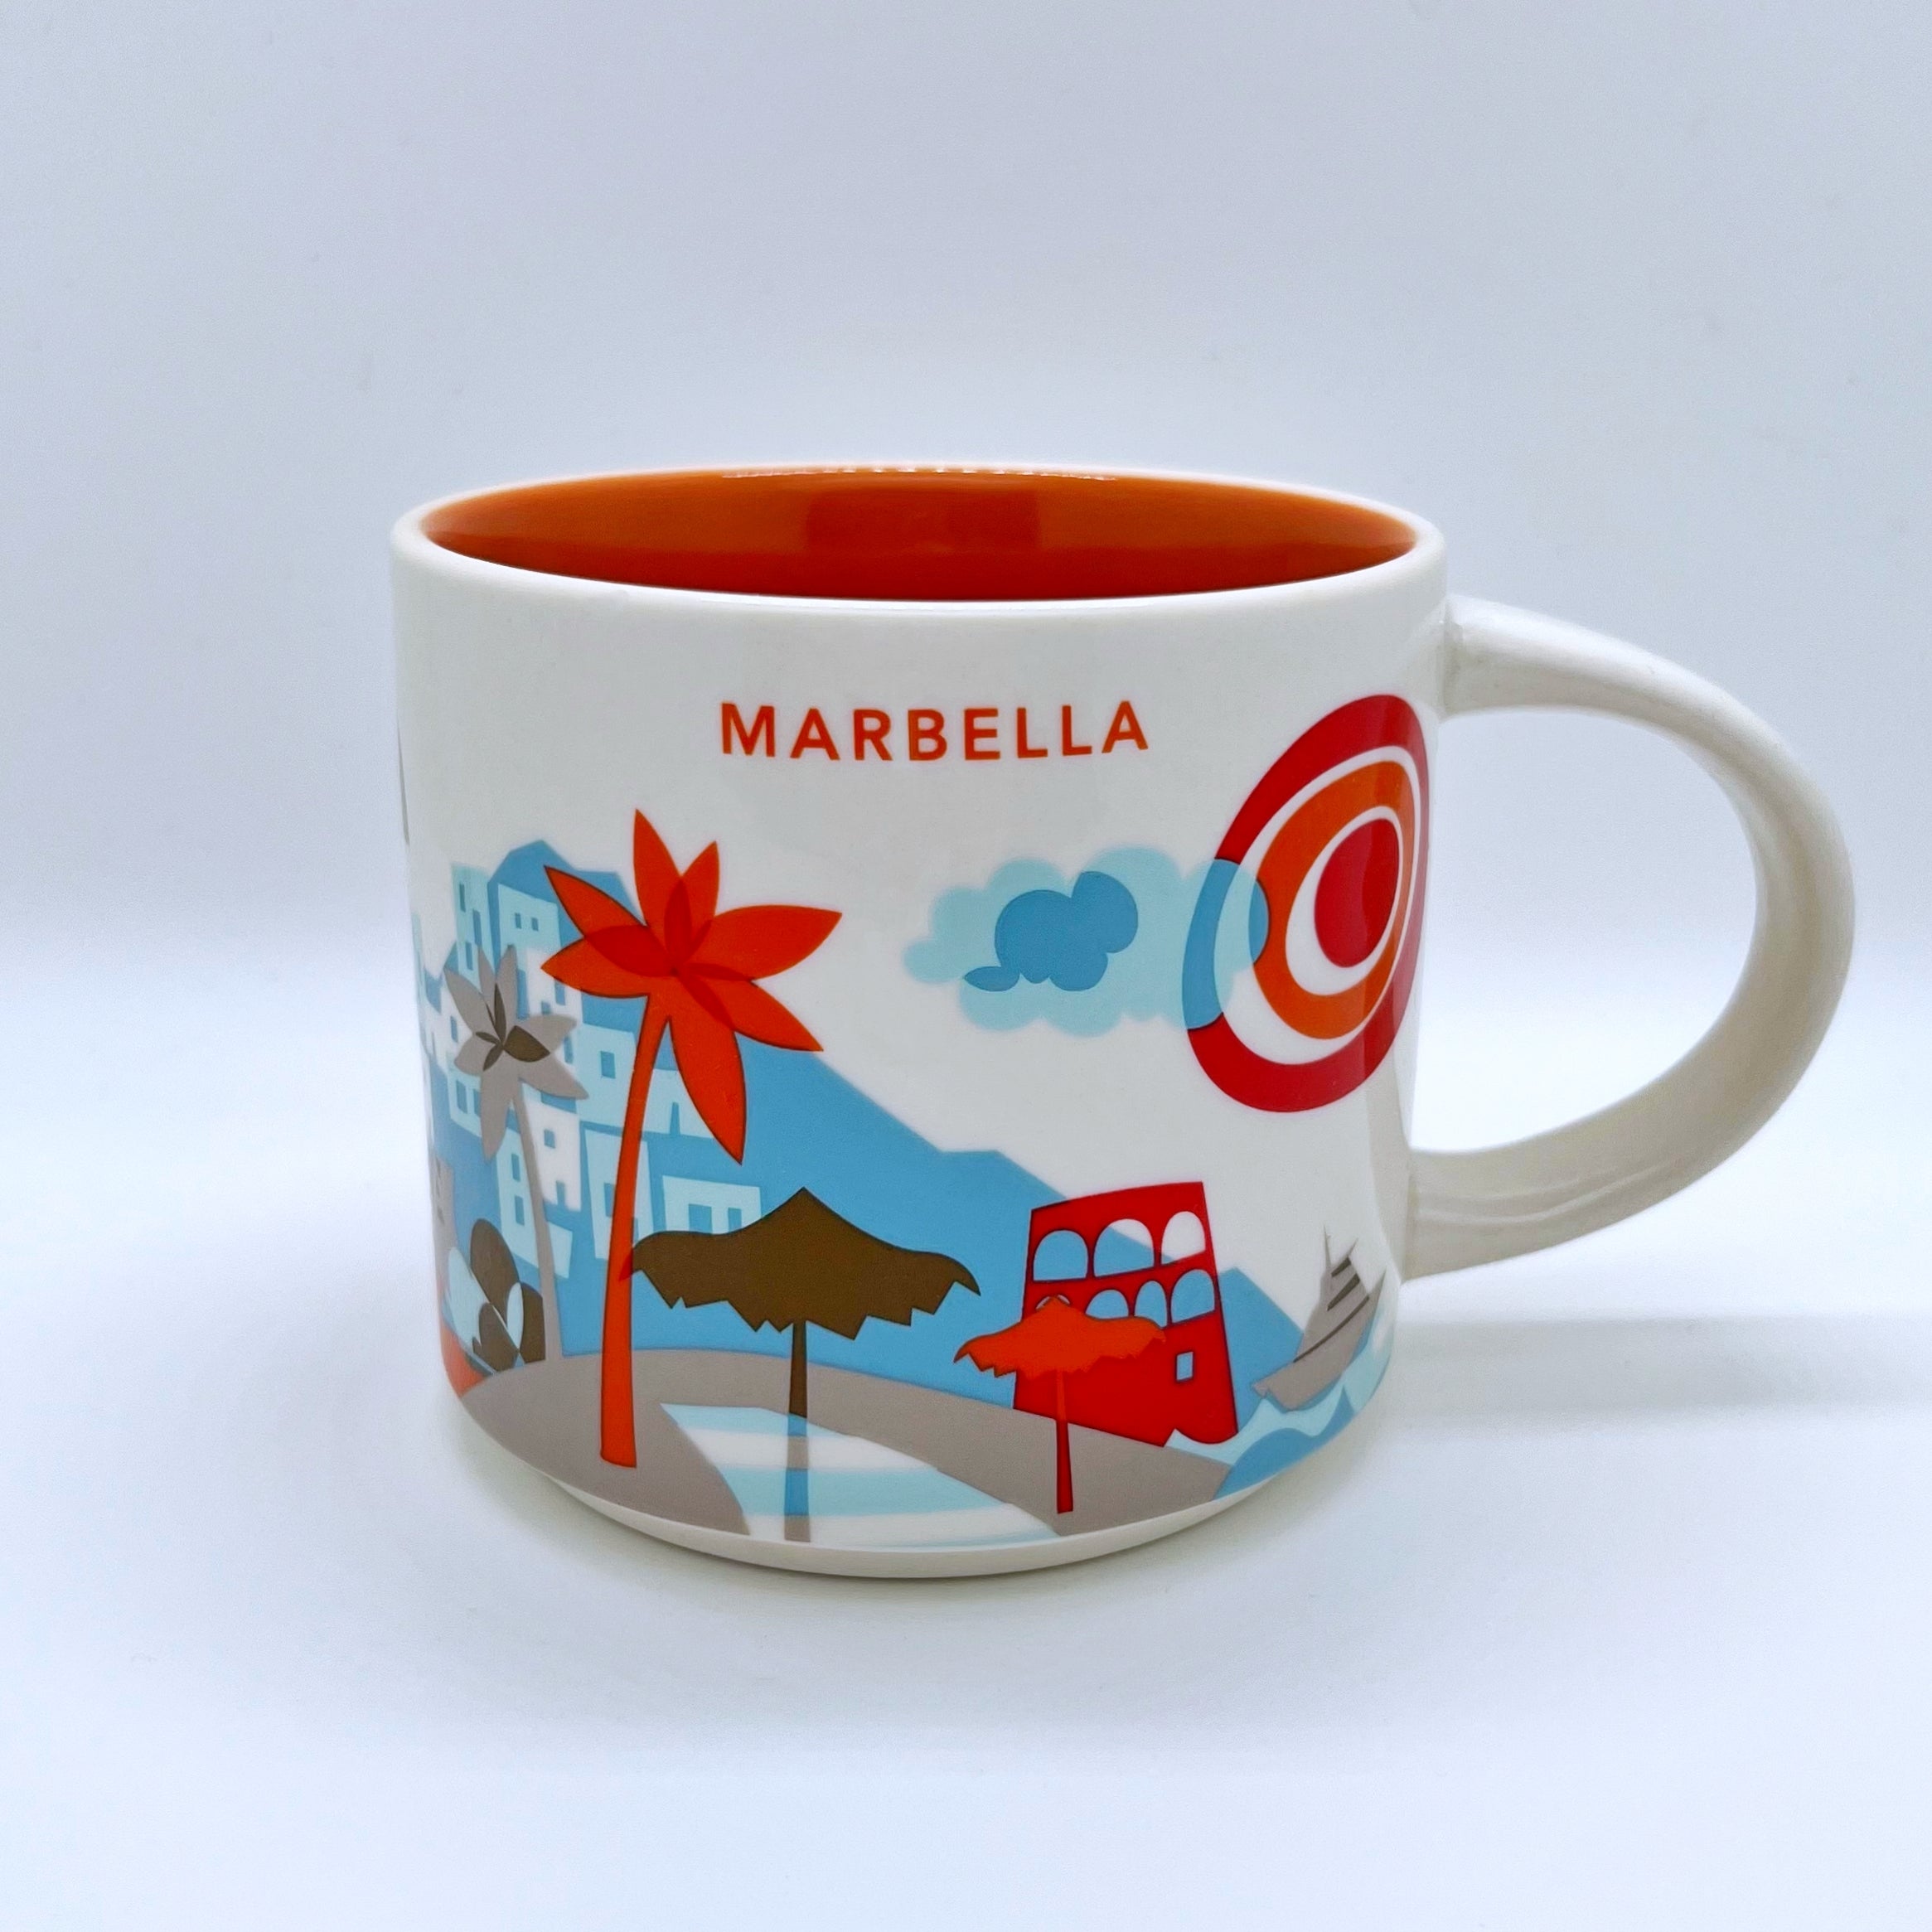 Kaffee Tee und Cappuccino Tasse von Starbucks mit gemalten Bildern aus der Stadt Marbella